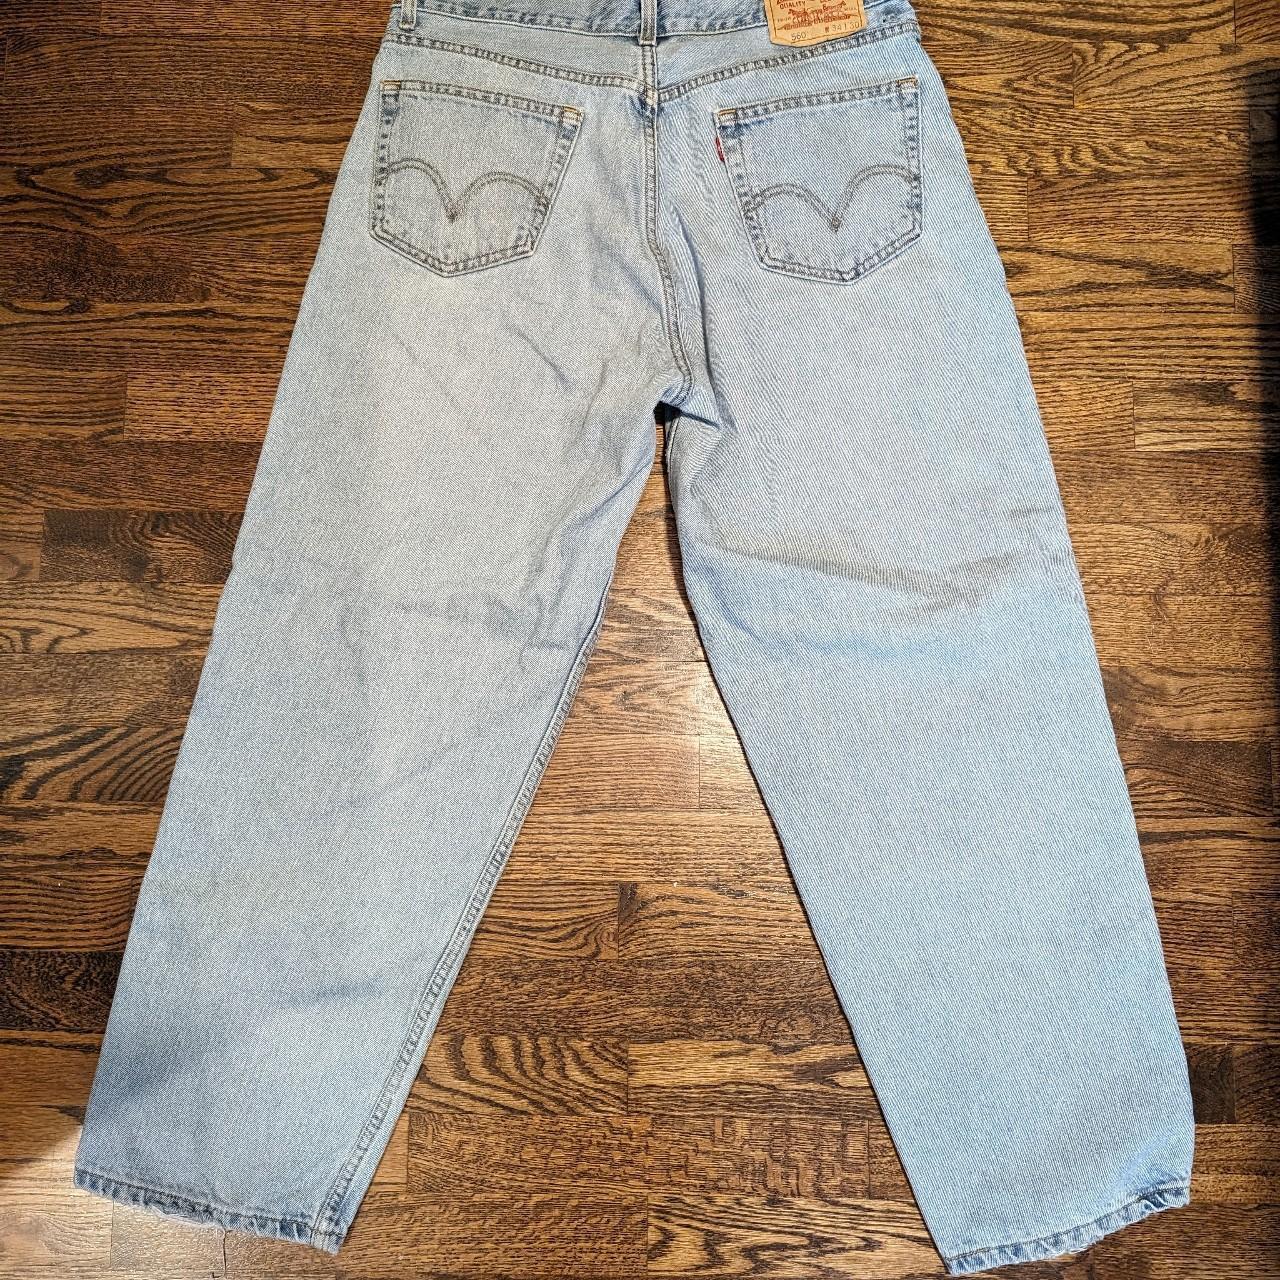 Vintage Levi's 560 comfort fit jeans, size 34